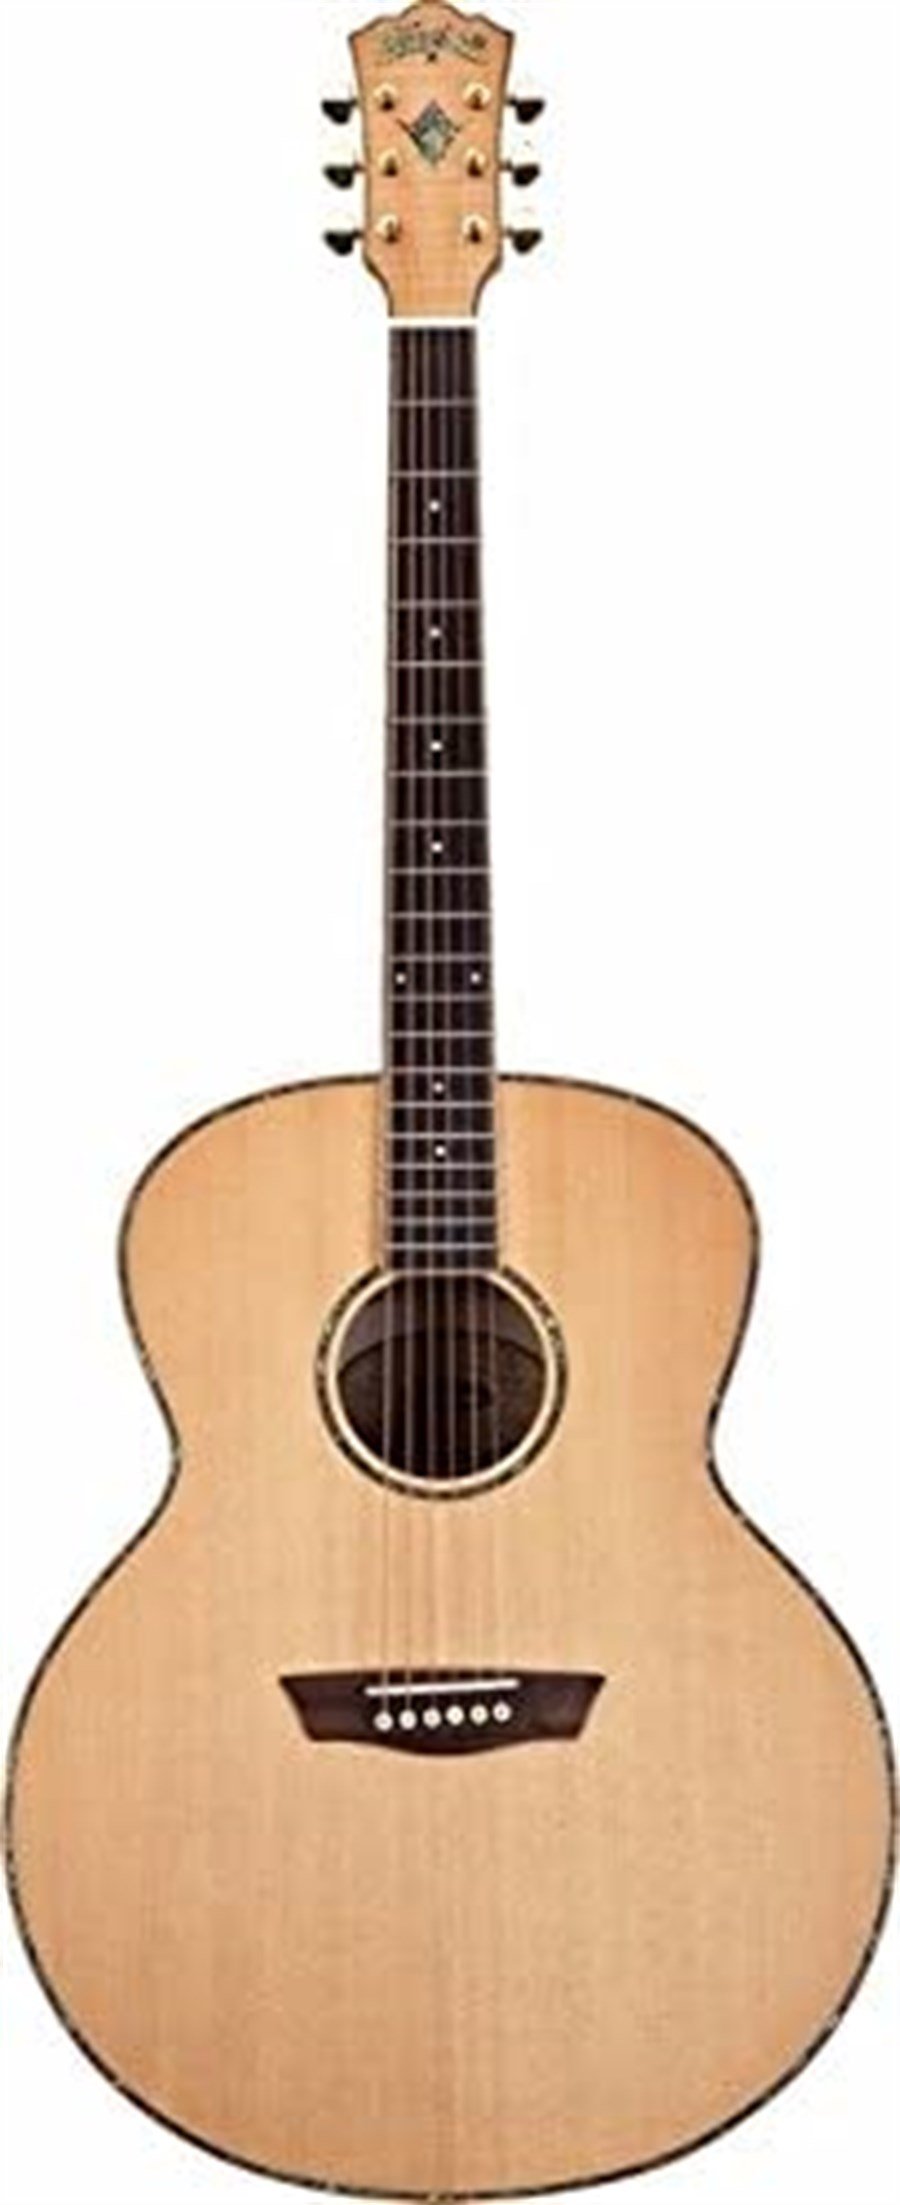 Washburn WJ45S Nat Jumbo Akustik Gitar Fiyatı ve Özellikleri  ®MeduMuzikMarket.com'da